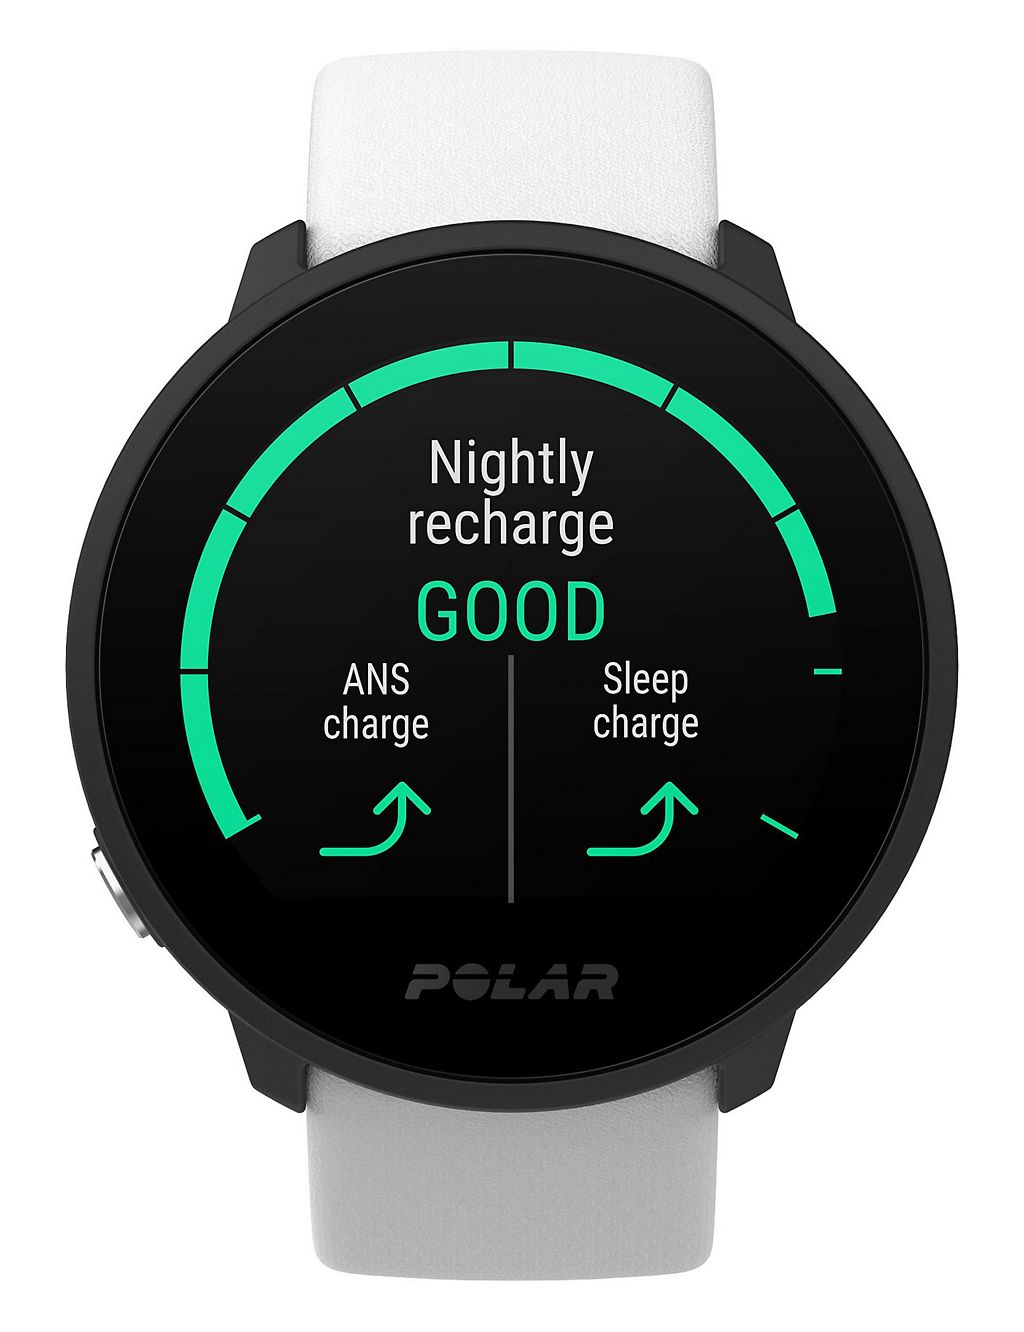 Polar Unite Fitness Tracker White Silicone Smartwatch 8 of 10